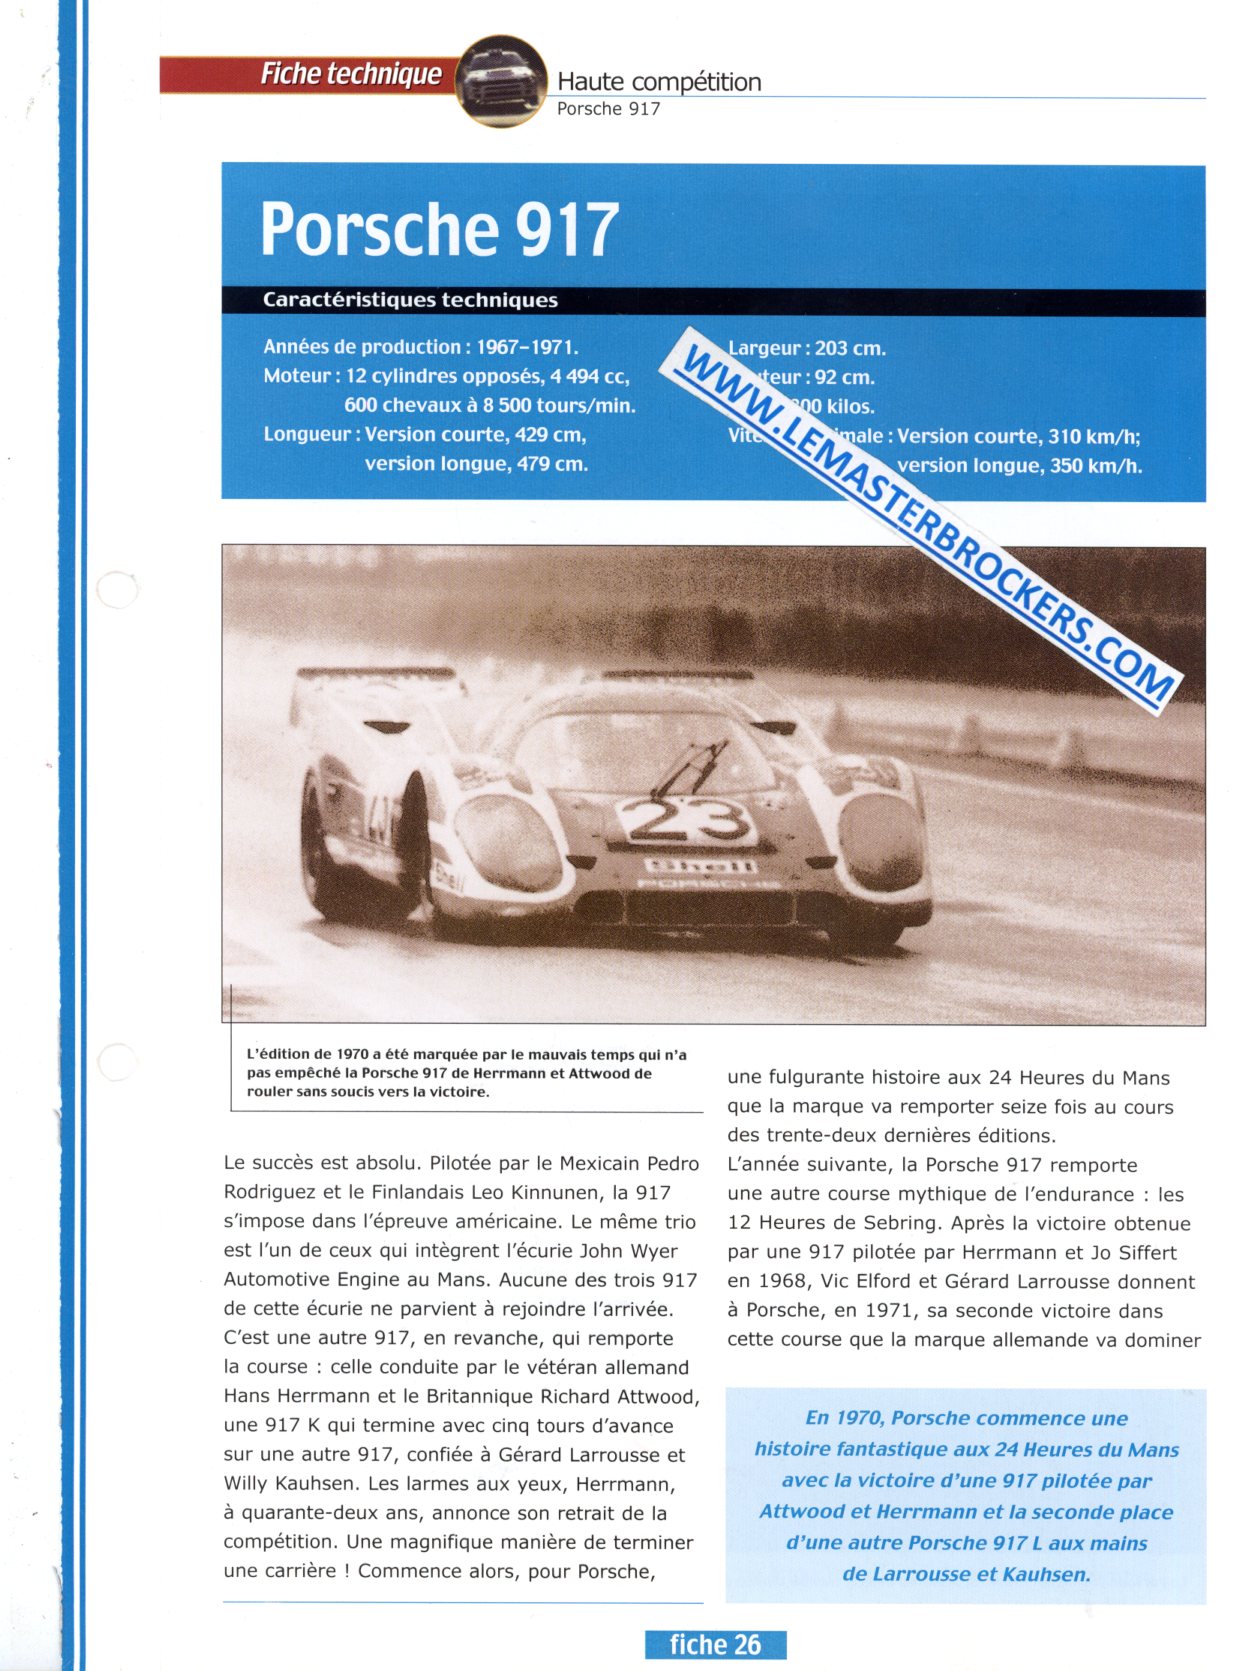 FICHE TECHNIQUE PORSCHE 917